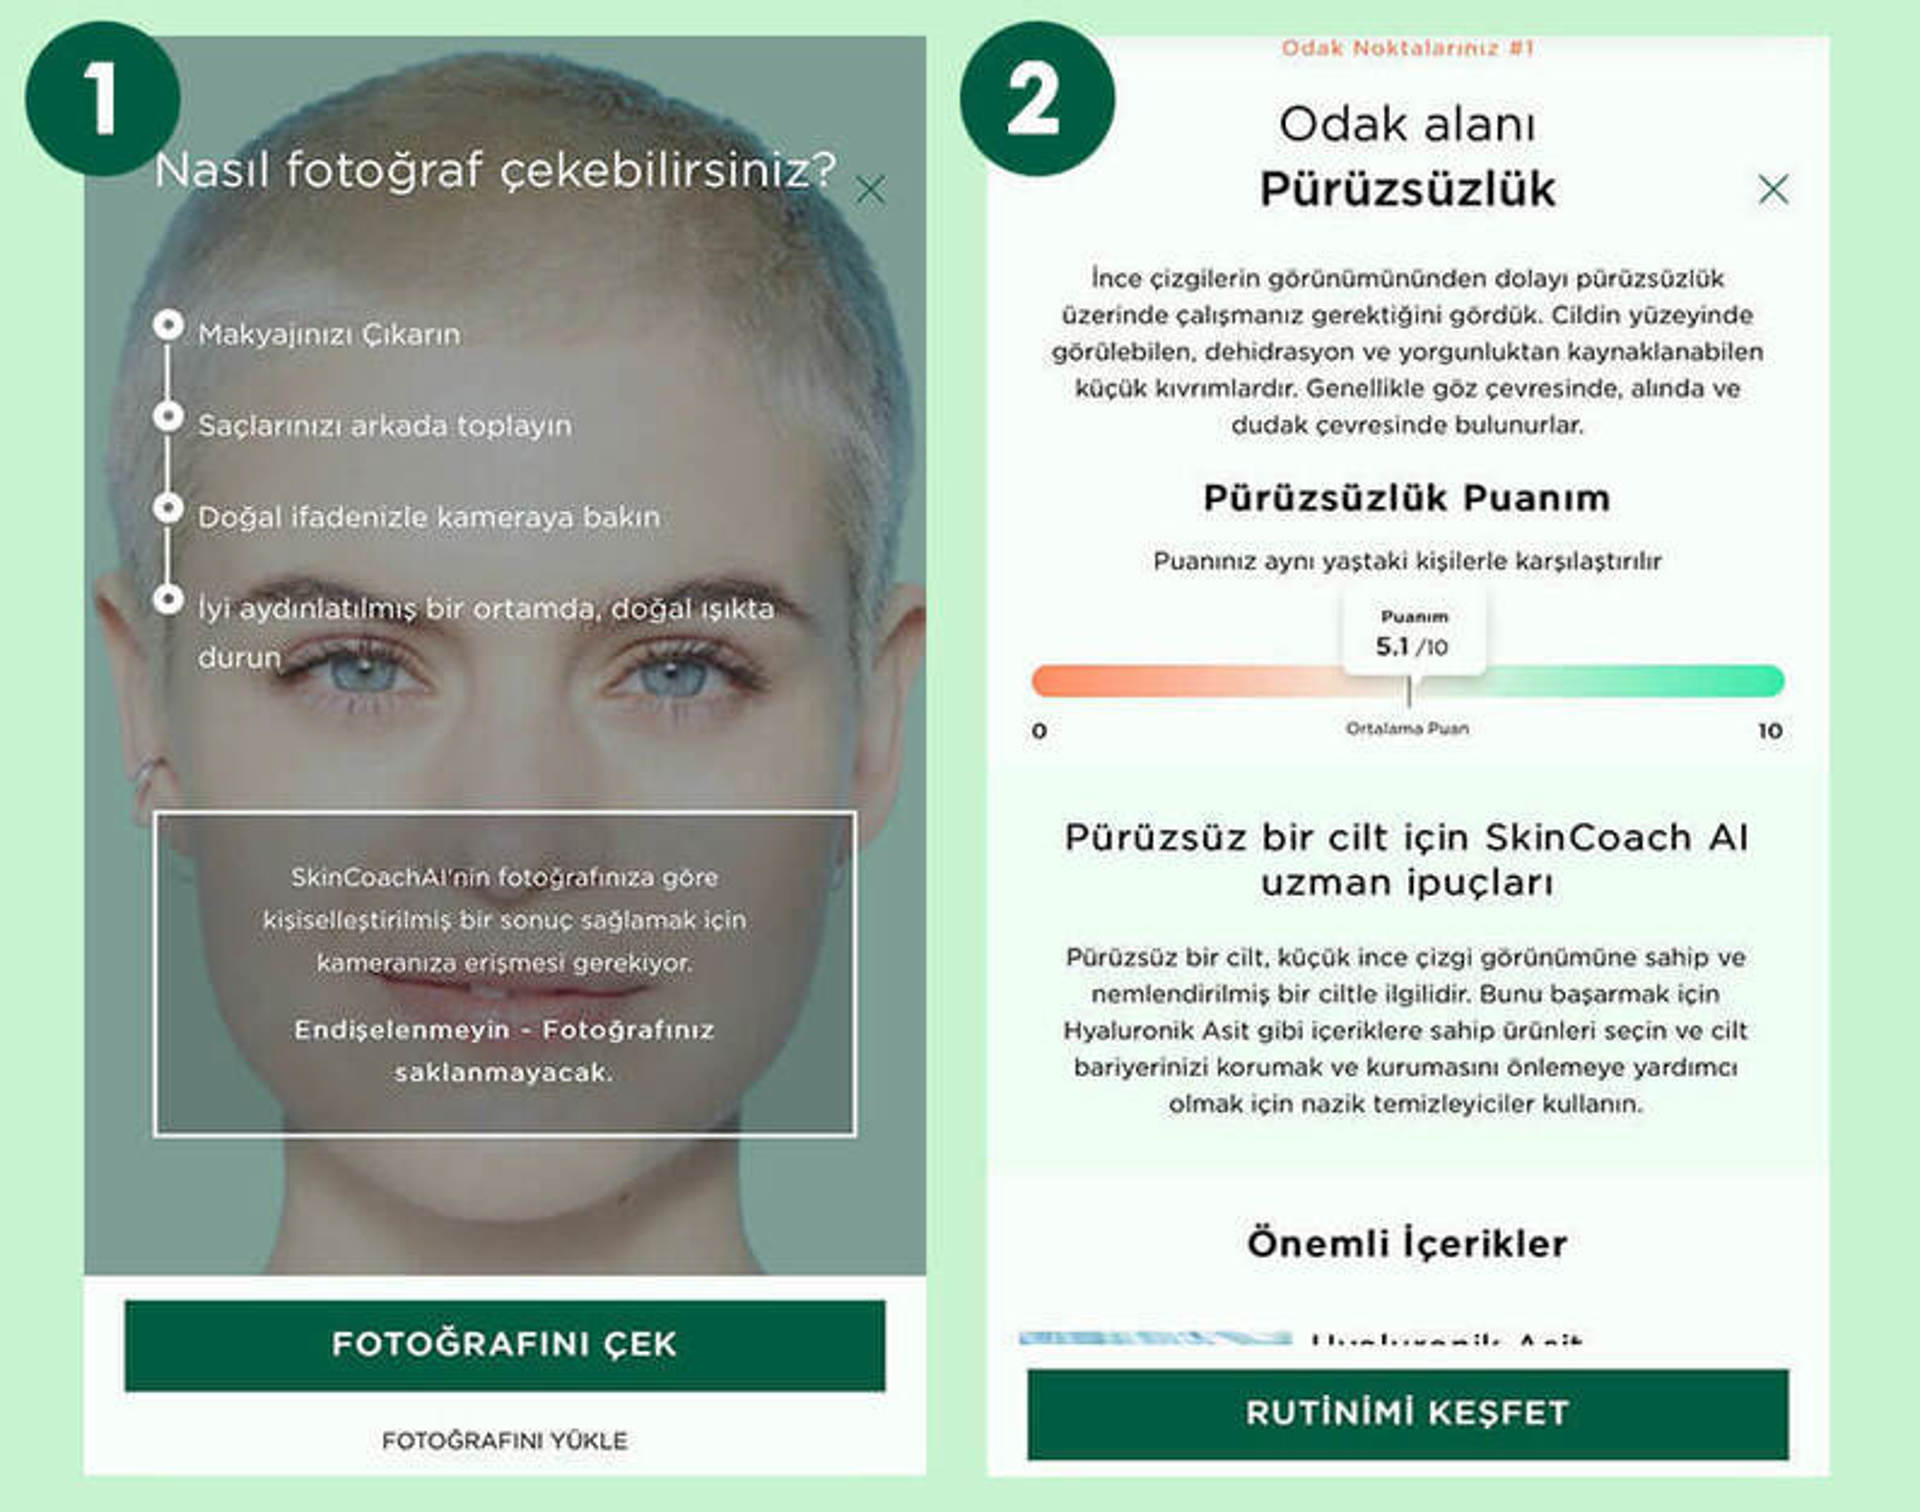 Garnier Skin Coach AI Online Cilt Analizi Uygulaması Nedir? 2